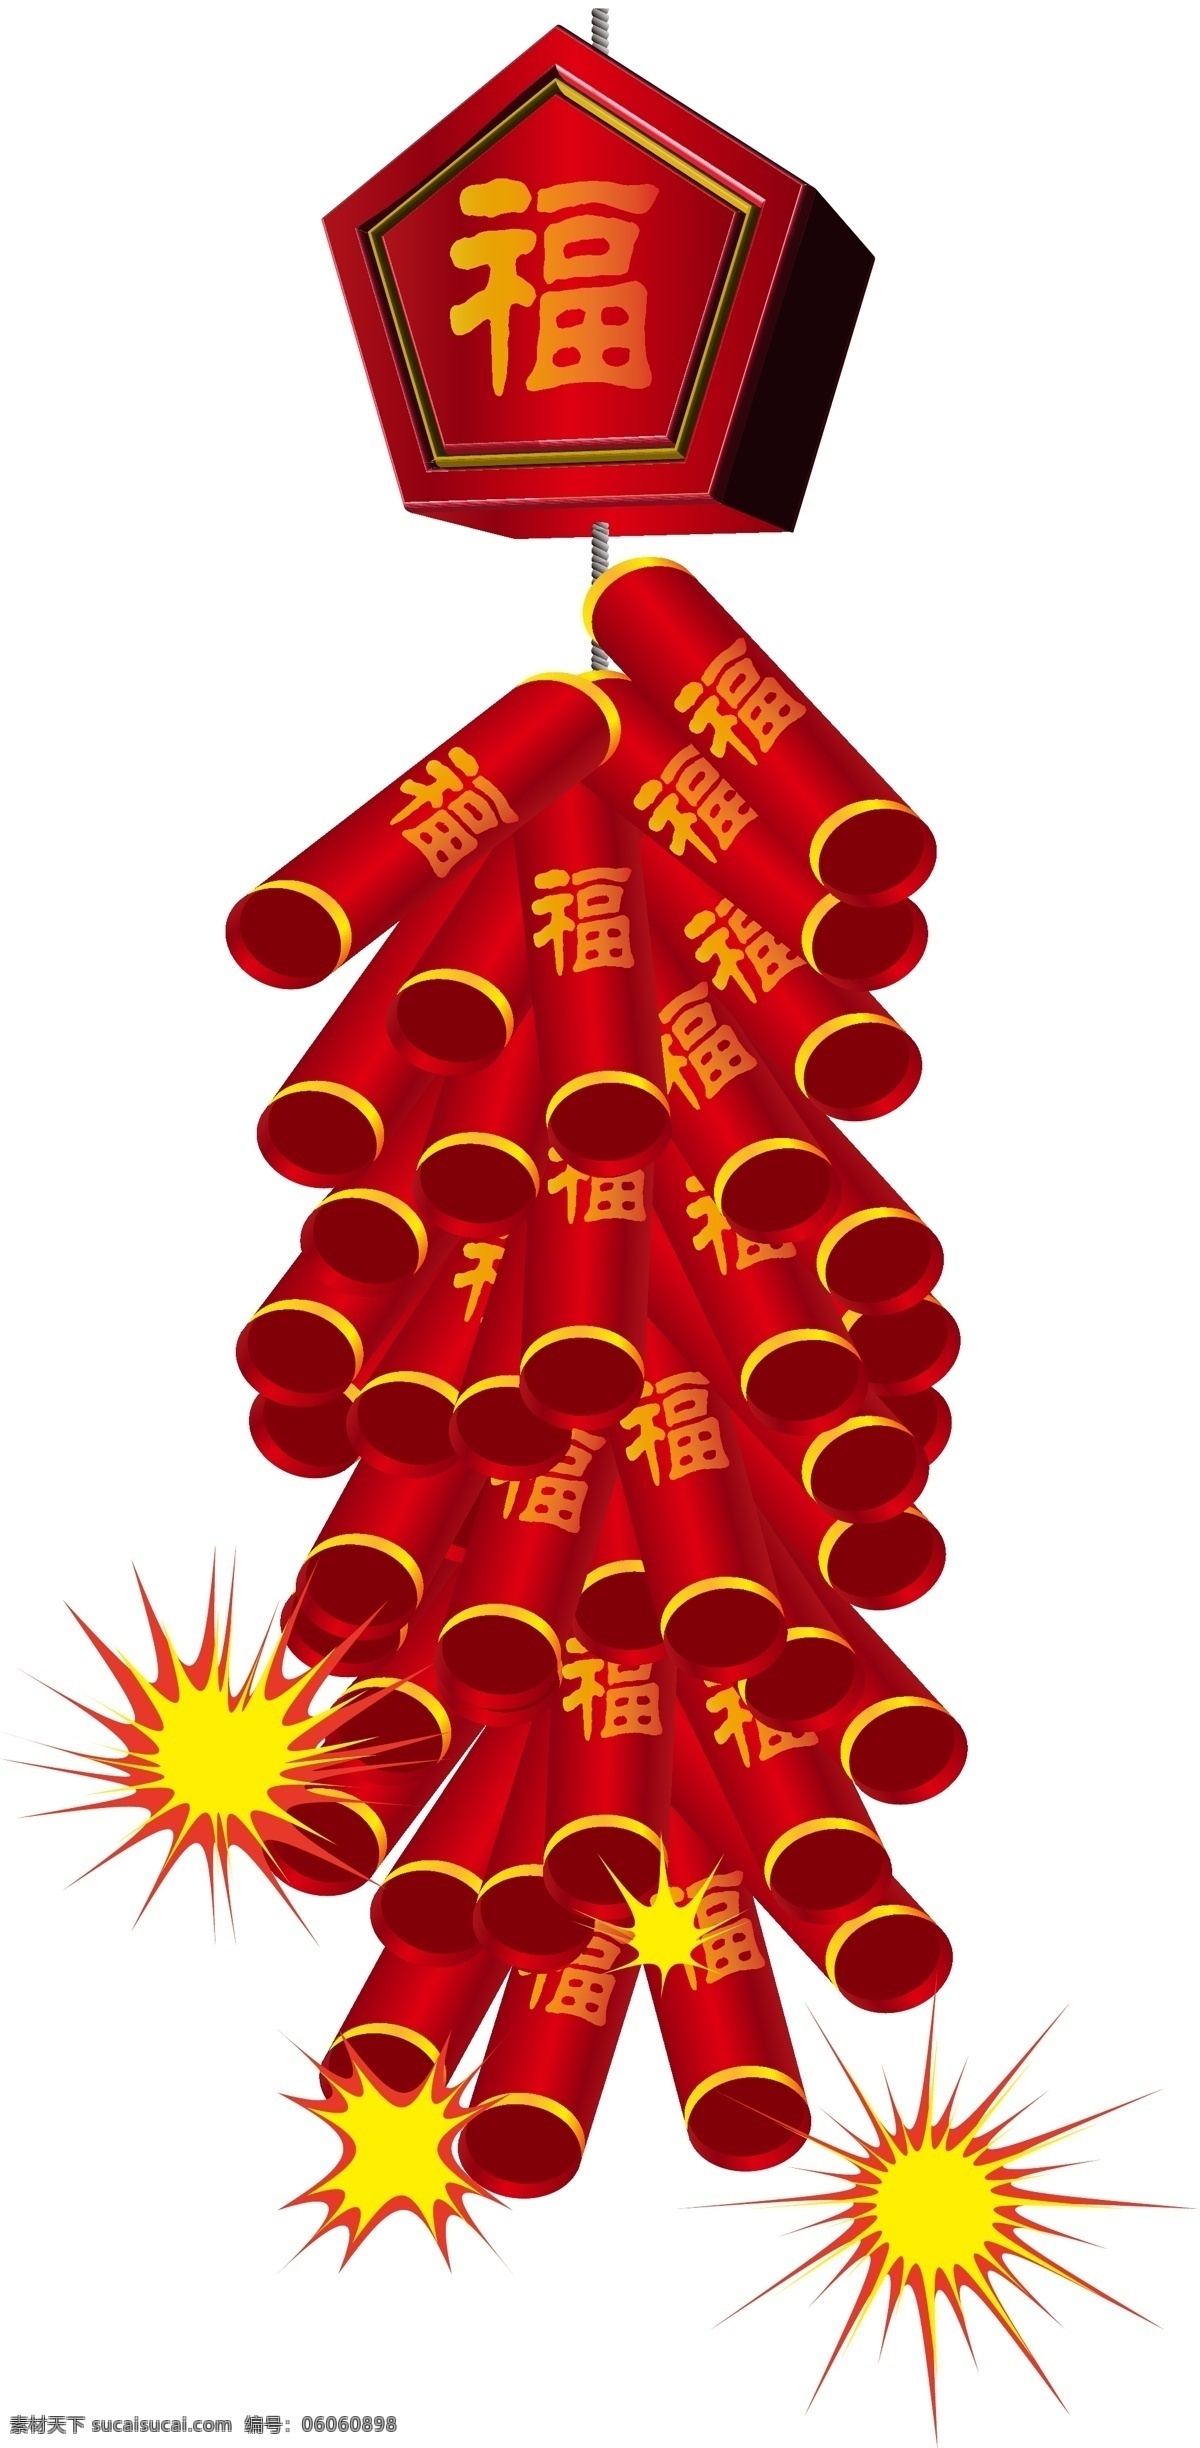 矢量 手绘 鞭炮 爆竹 红色 爆炸 黄色 春节 节日 喜庆 过年 开心 快乐 红火 玩耍 热闹 美